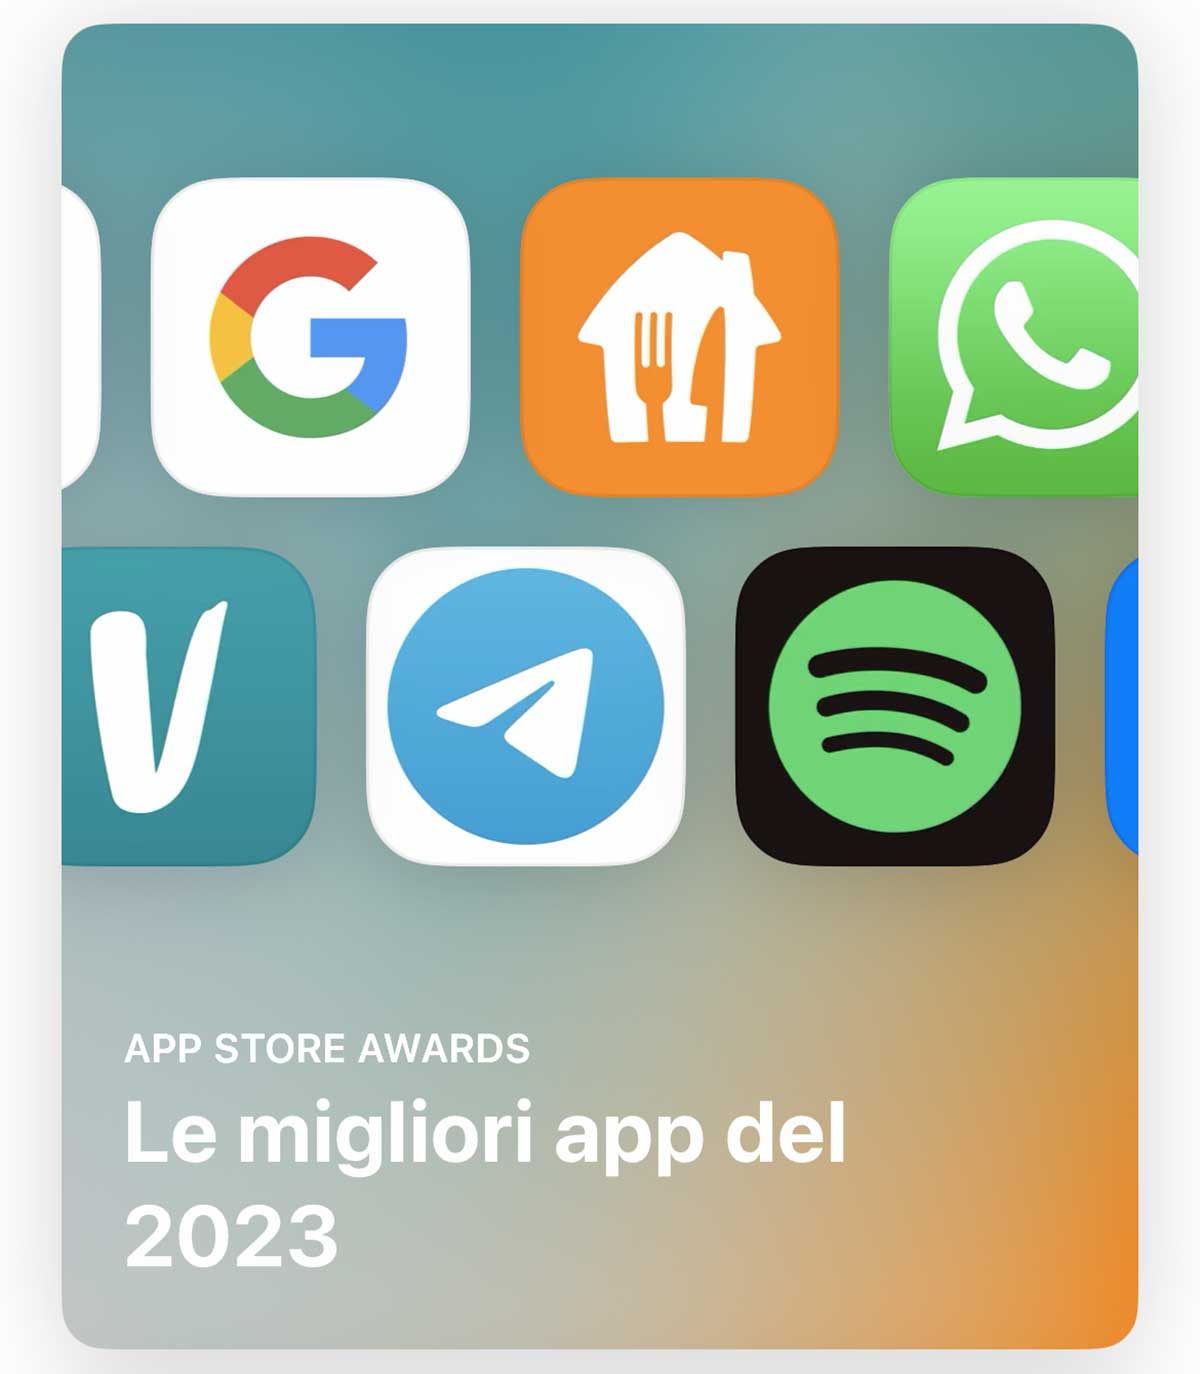 Le app e i giochi più amati del 2023 secondo Apple